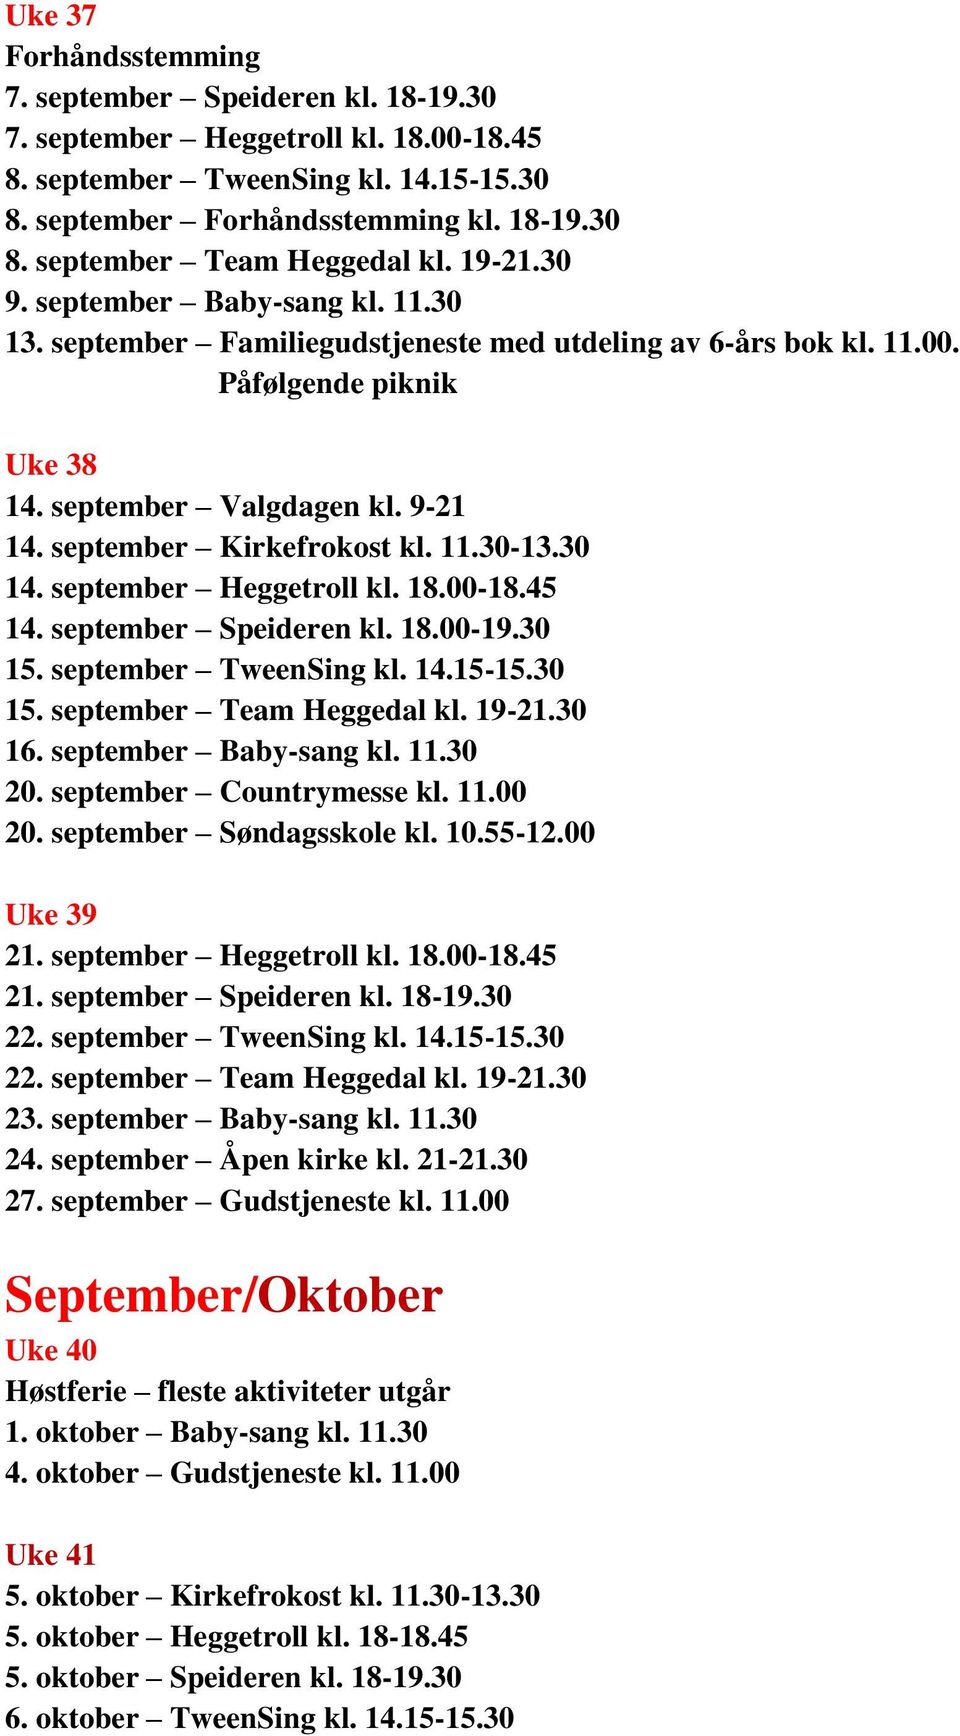 30 14. september Heggetroll kl. 18.00-18.45 14. september Speideren kl. 18.00-19.30 15. september TweenSing kl. 14.15-15.30 15. september Team Heggedal kl. 19-21.30 16. september Baby-sang kl. 11.